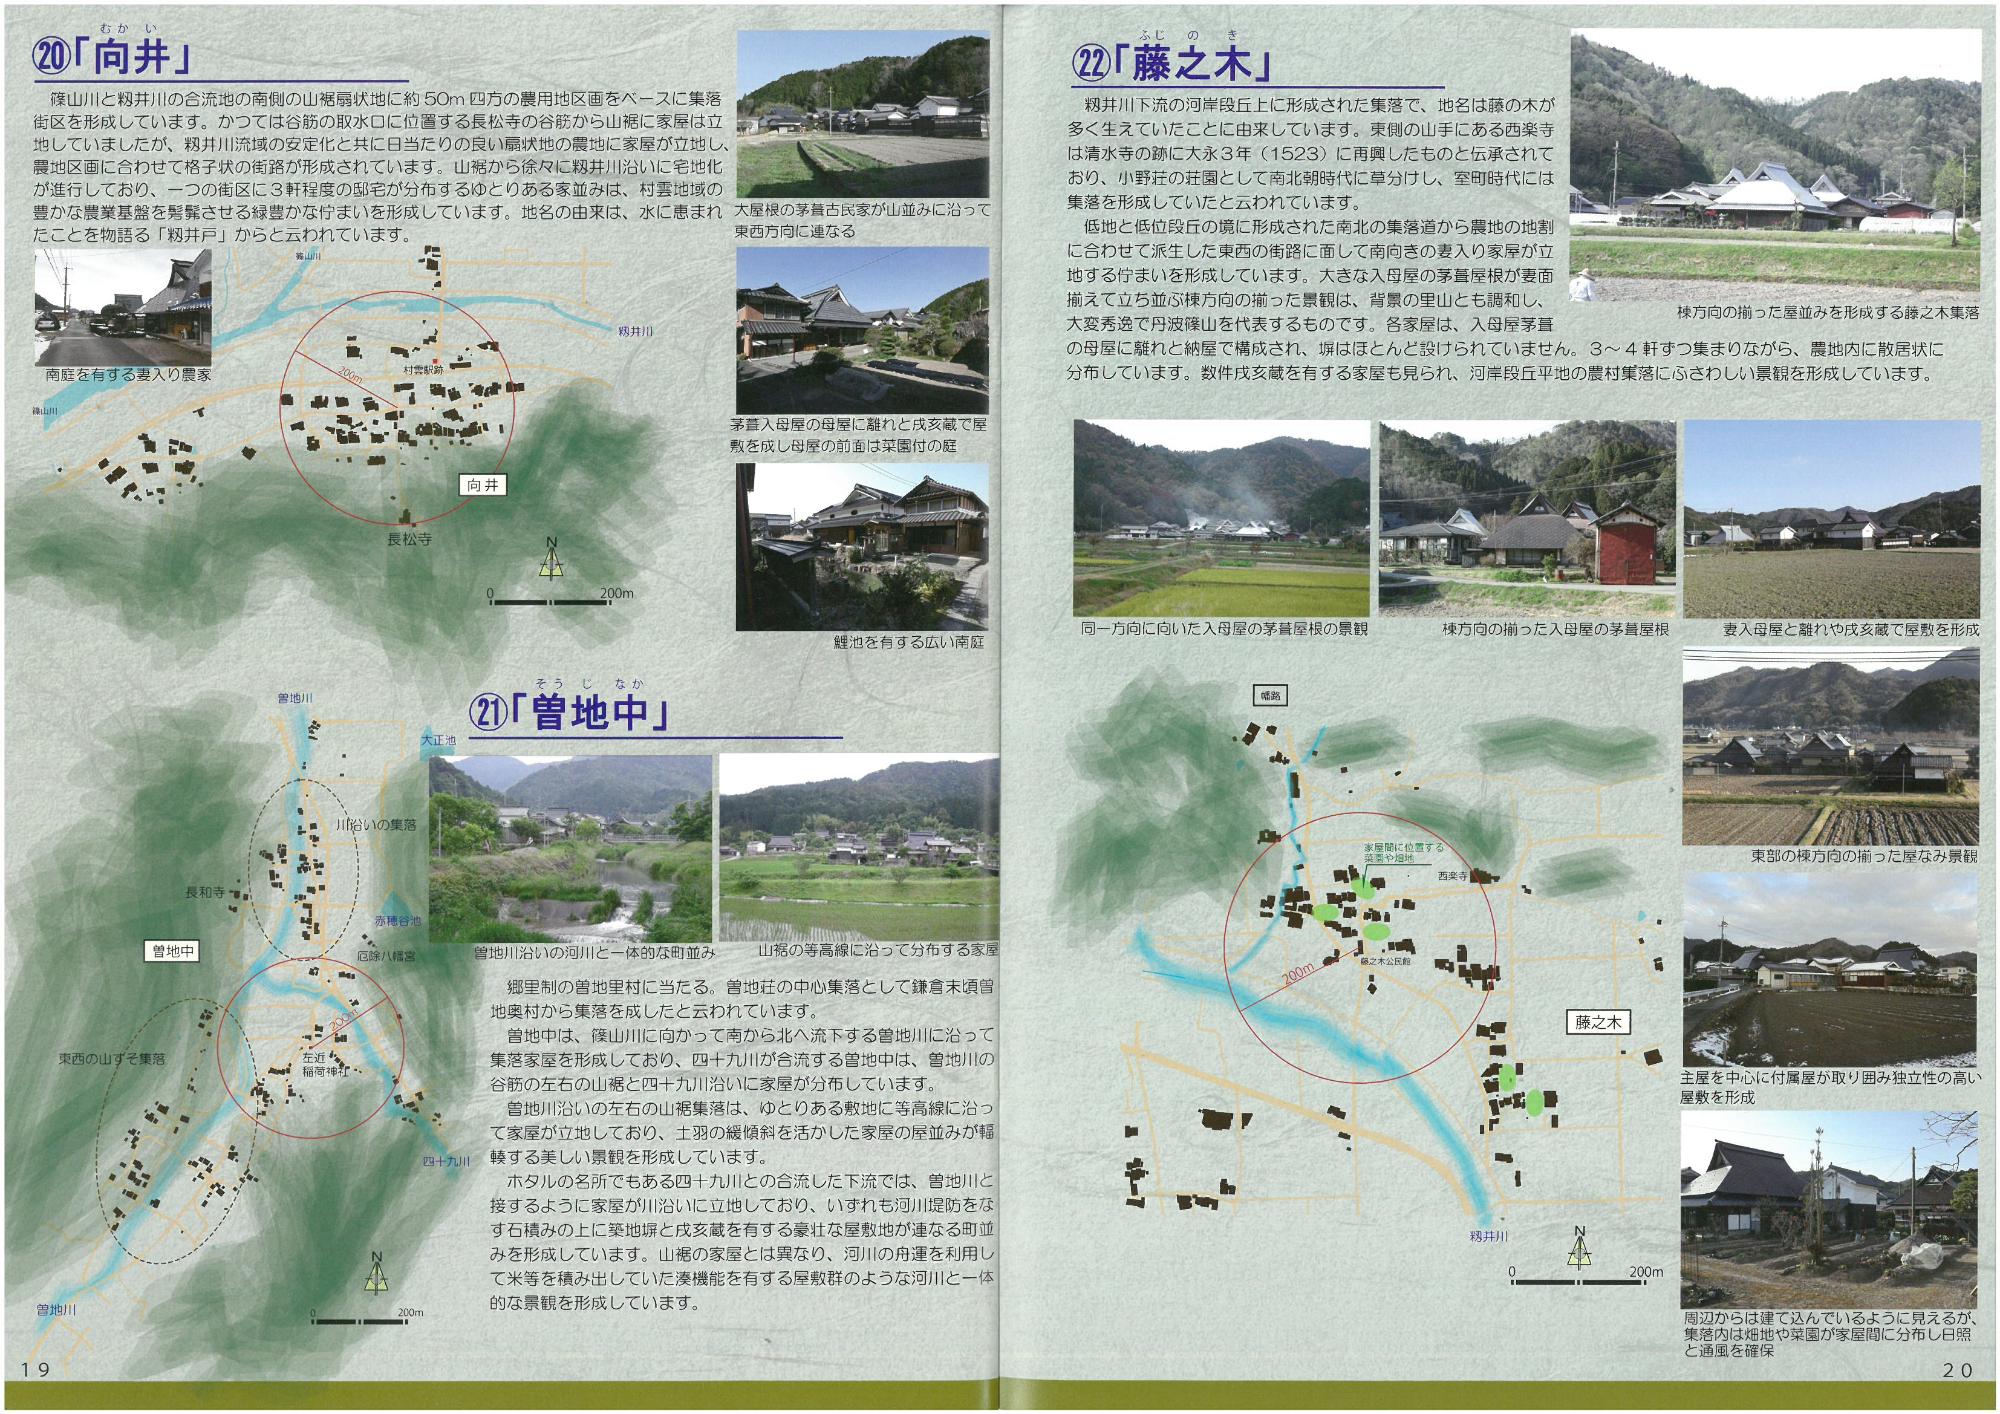 農村集落の景観を紹介しているページ。